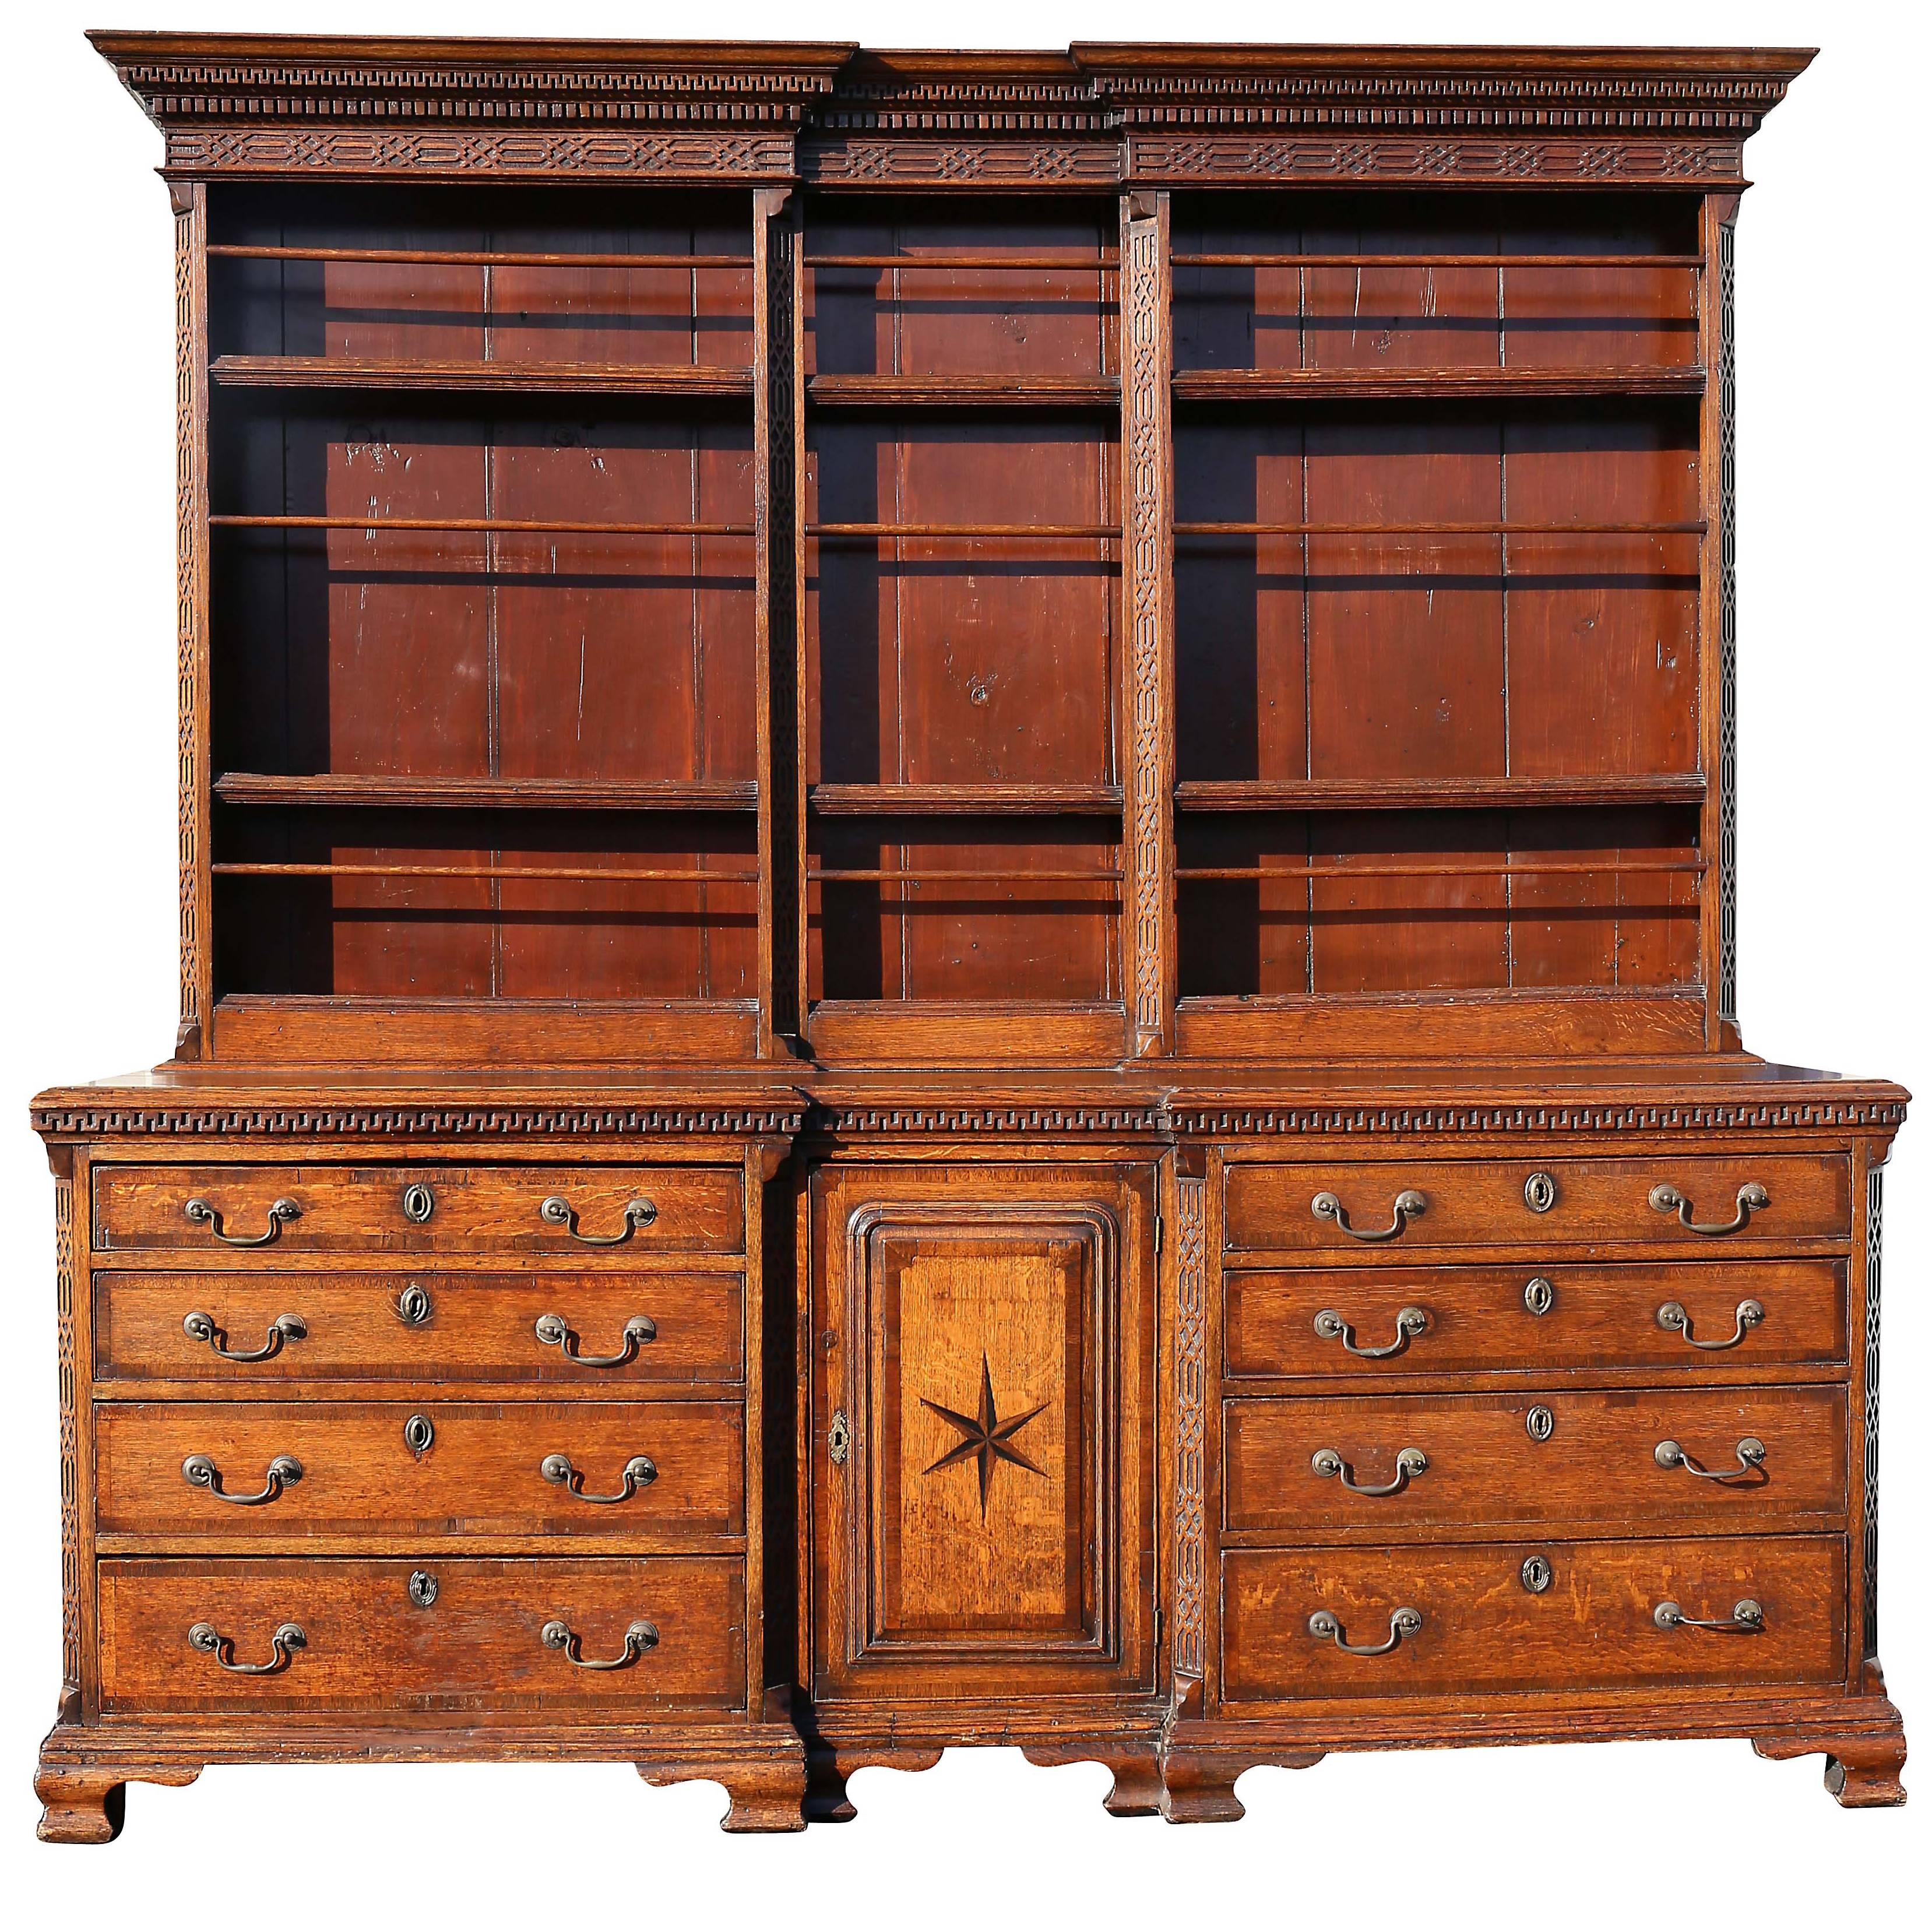 George III Oak and Inlaid Cupboard or Dresser